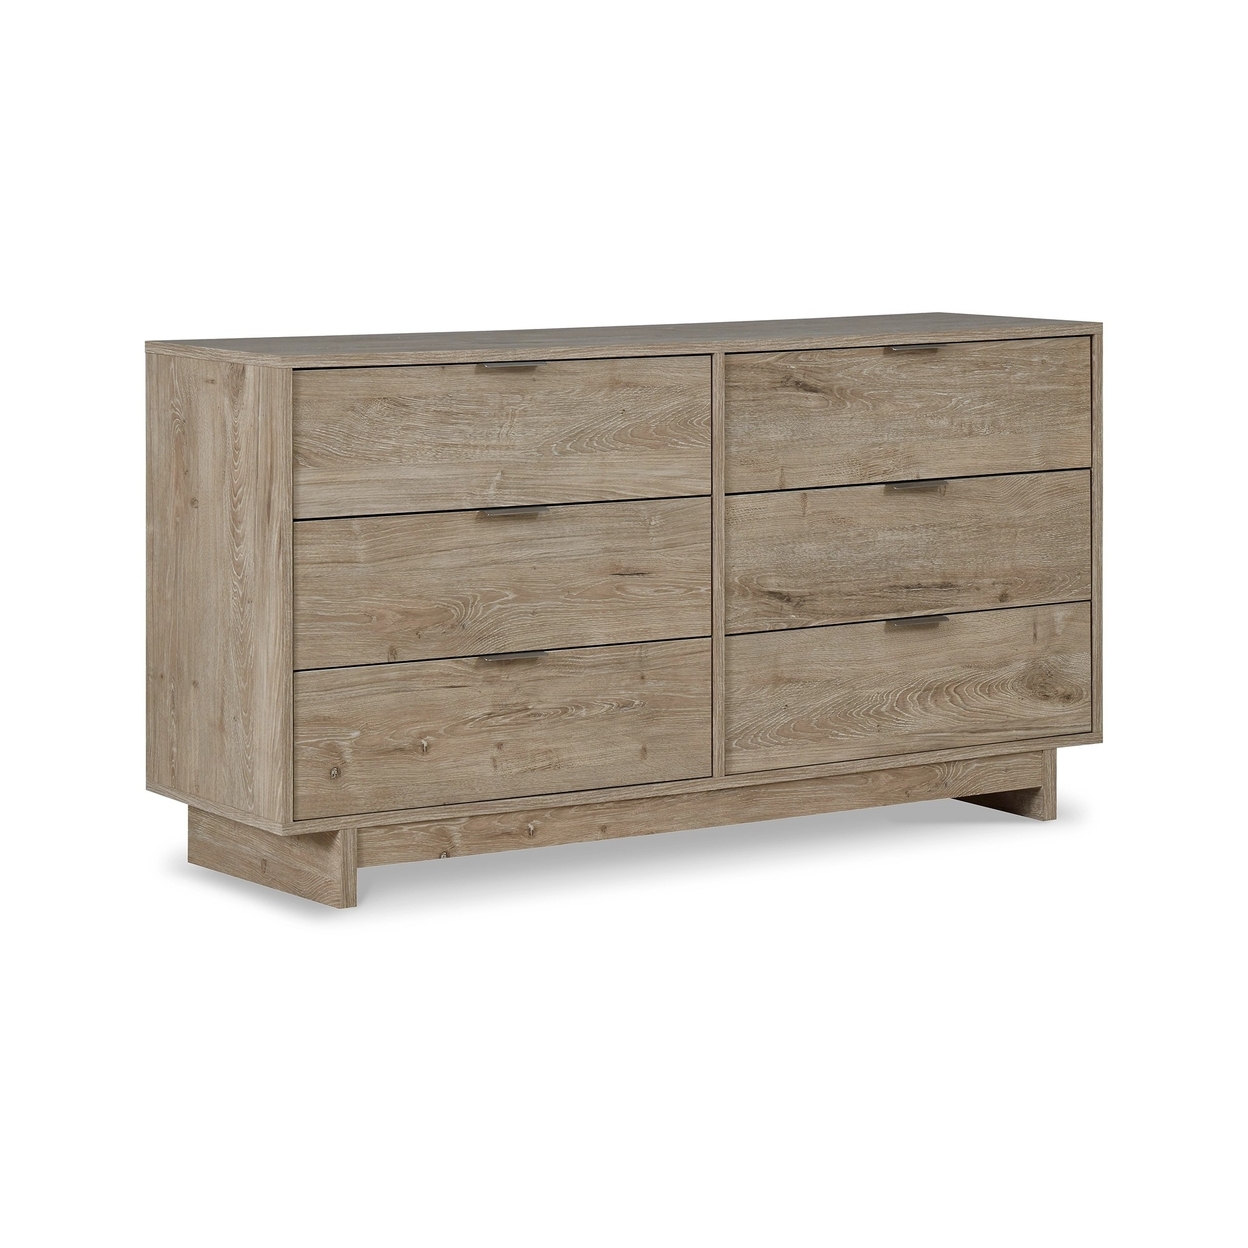 Fervor 59 Inch Dresser, 6 Drawers, Brown Wood Frame, Brushed Nickel Handles- Saltoro Sherpi